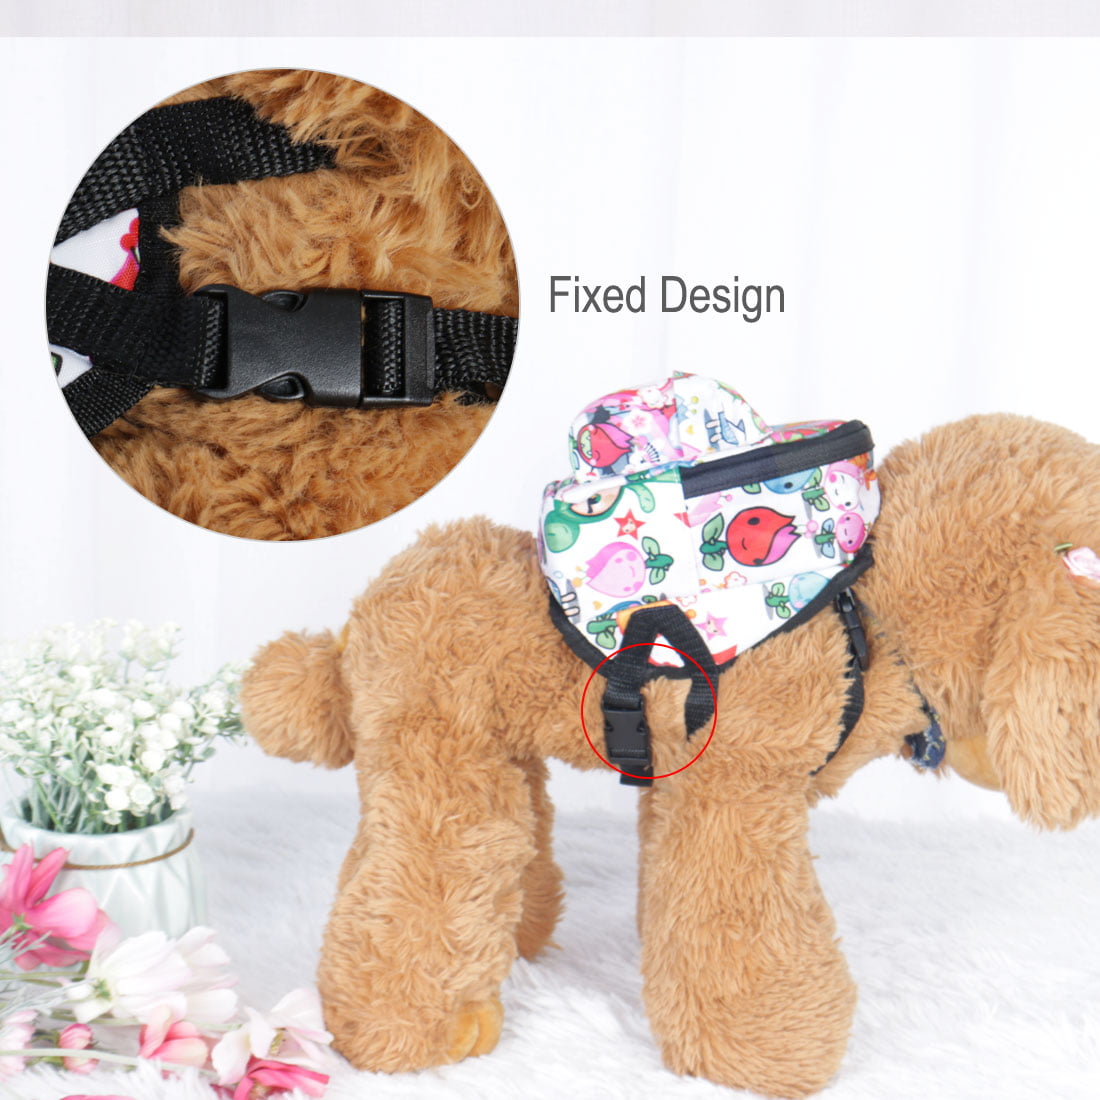 Dog Backpack Cartoon Adjustable Strap Puppy Pet Carrier Holder Bag w ...